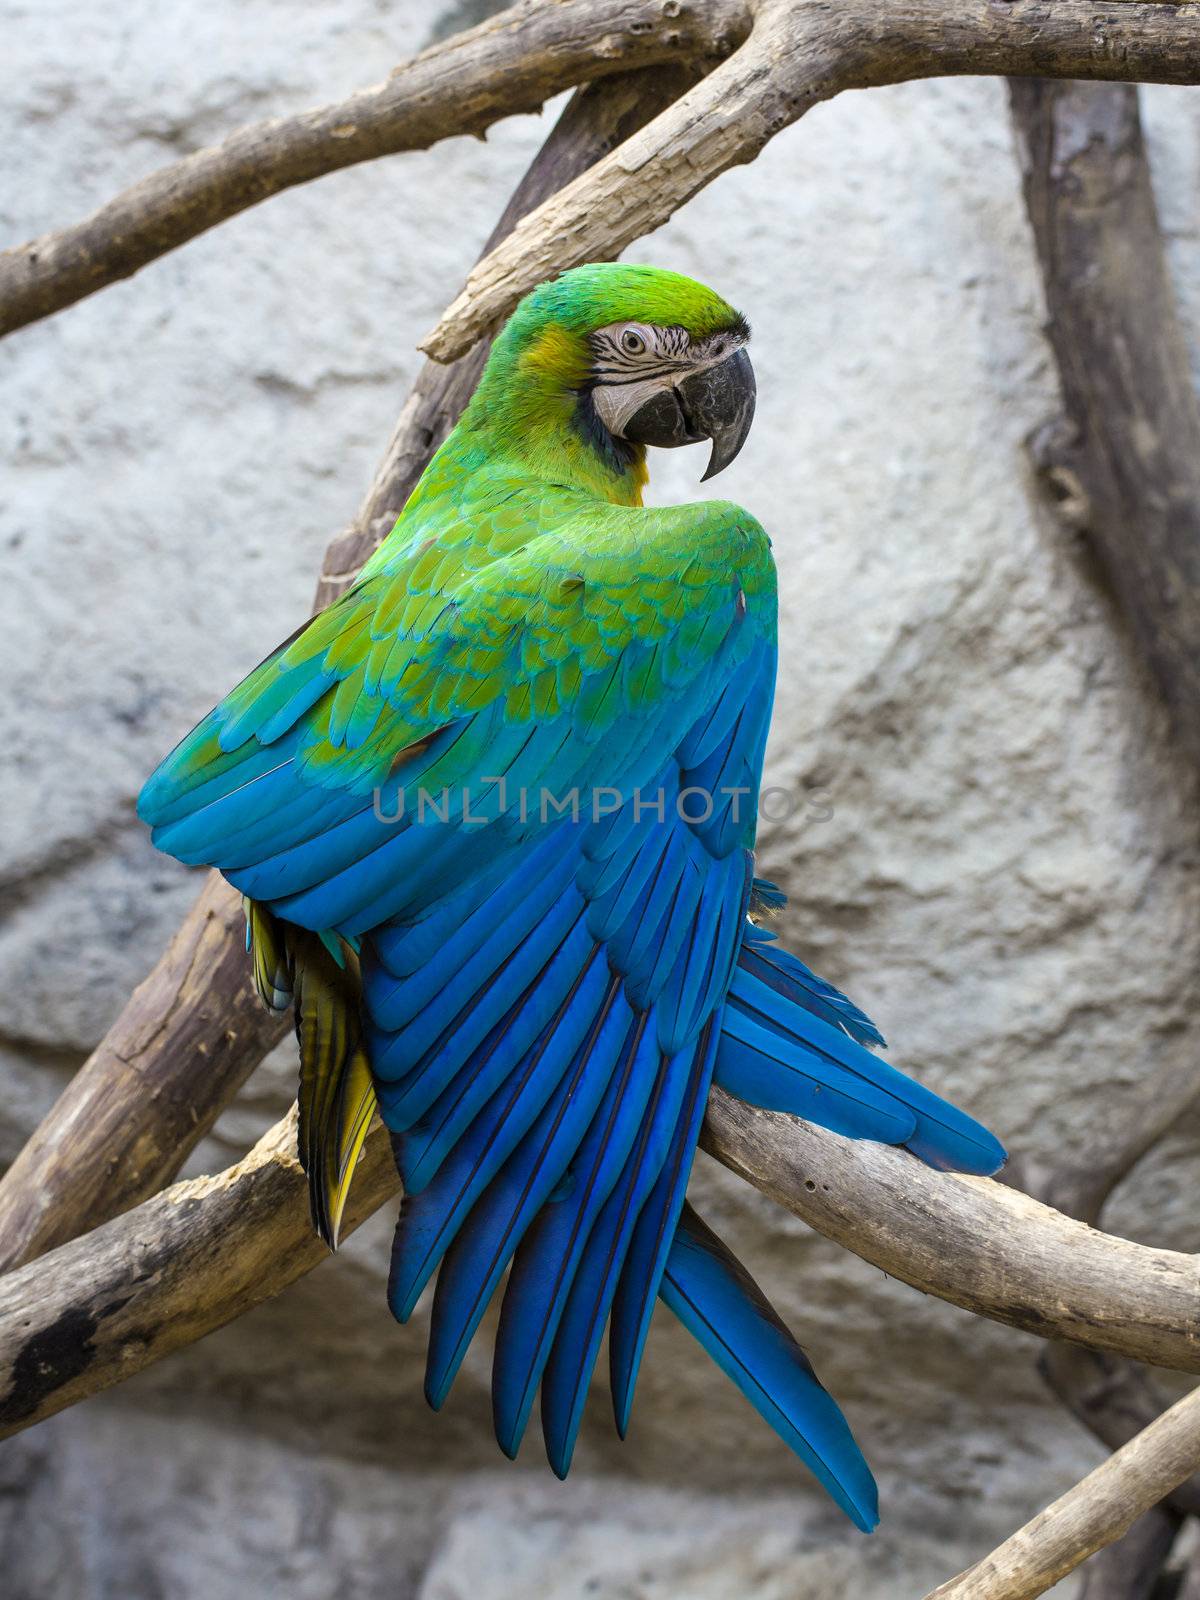 Blue and Gold macaw, Scientific name "Ara ararauna" bird